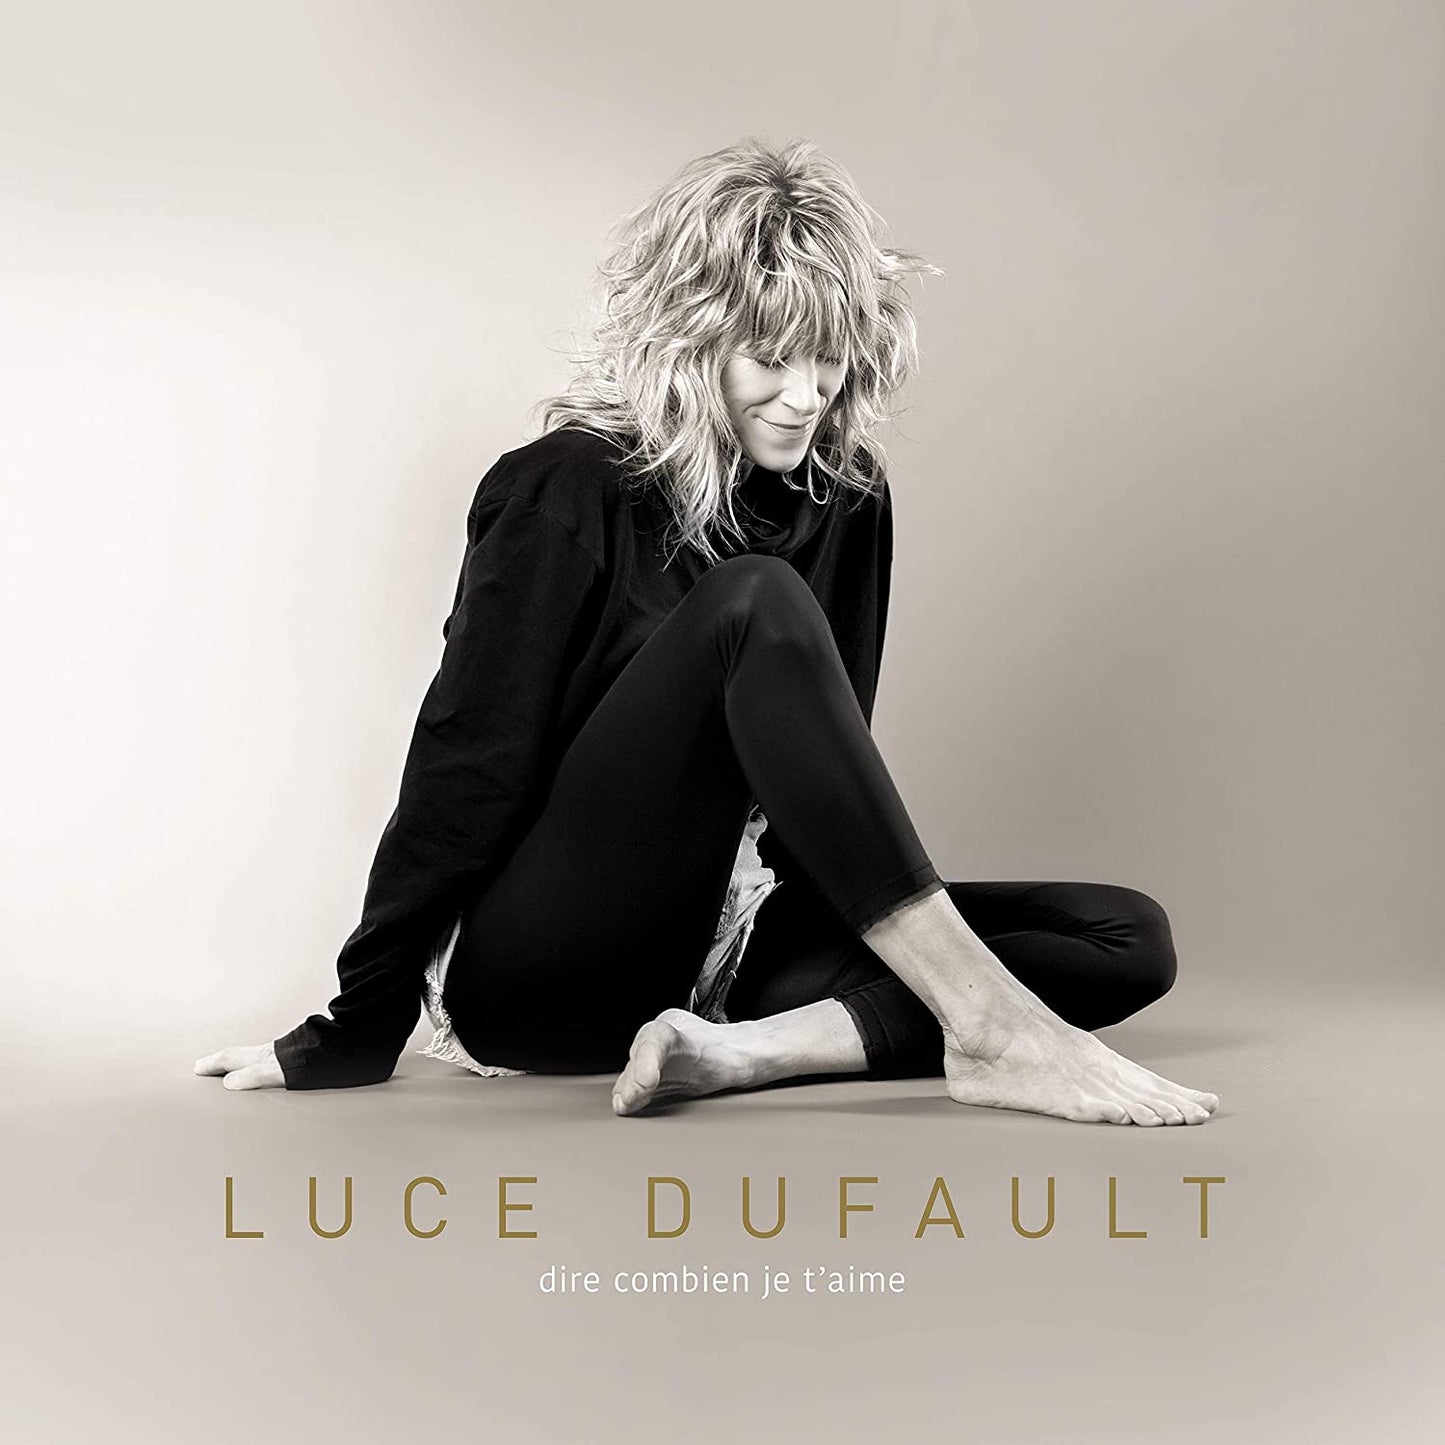 Dire combien je t'aime [Audio CD] Luce Dufault